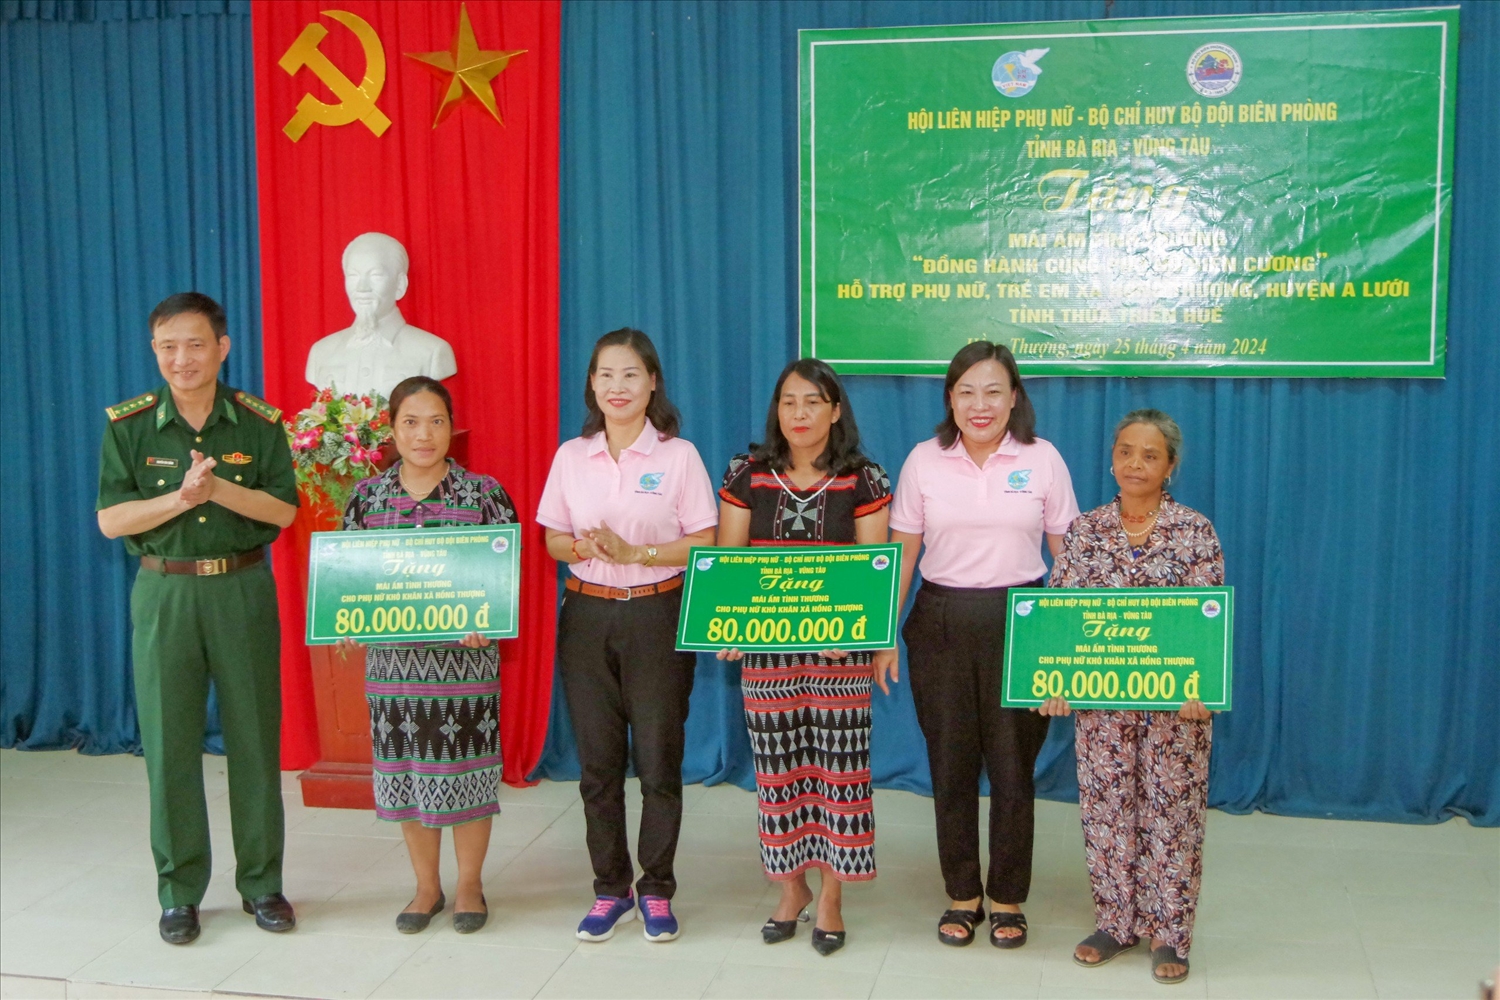 Trao hỗ trợ xây dựng nhà cho các hộ gia đình phụ nữ nghèo xã Hồng Thượng, huyện A Lưới, tỉnh Thừa Thiên Huế